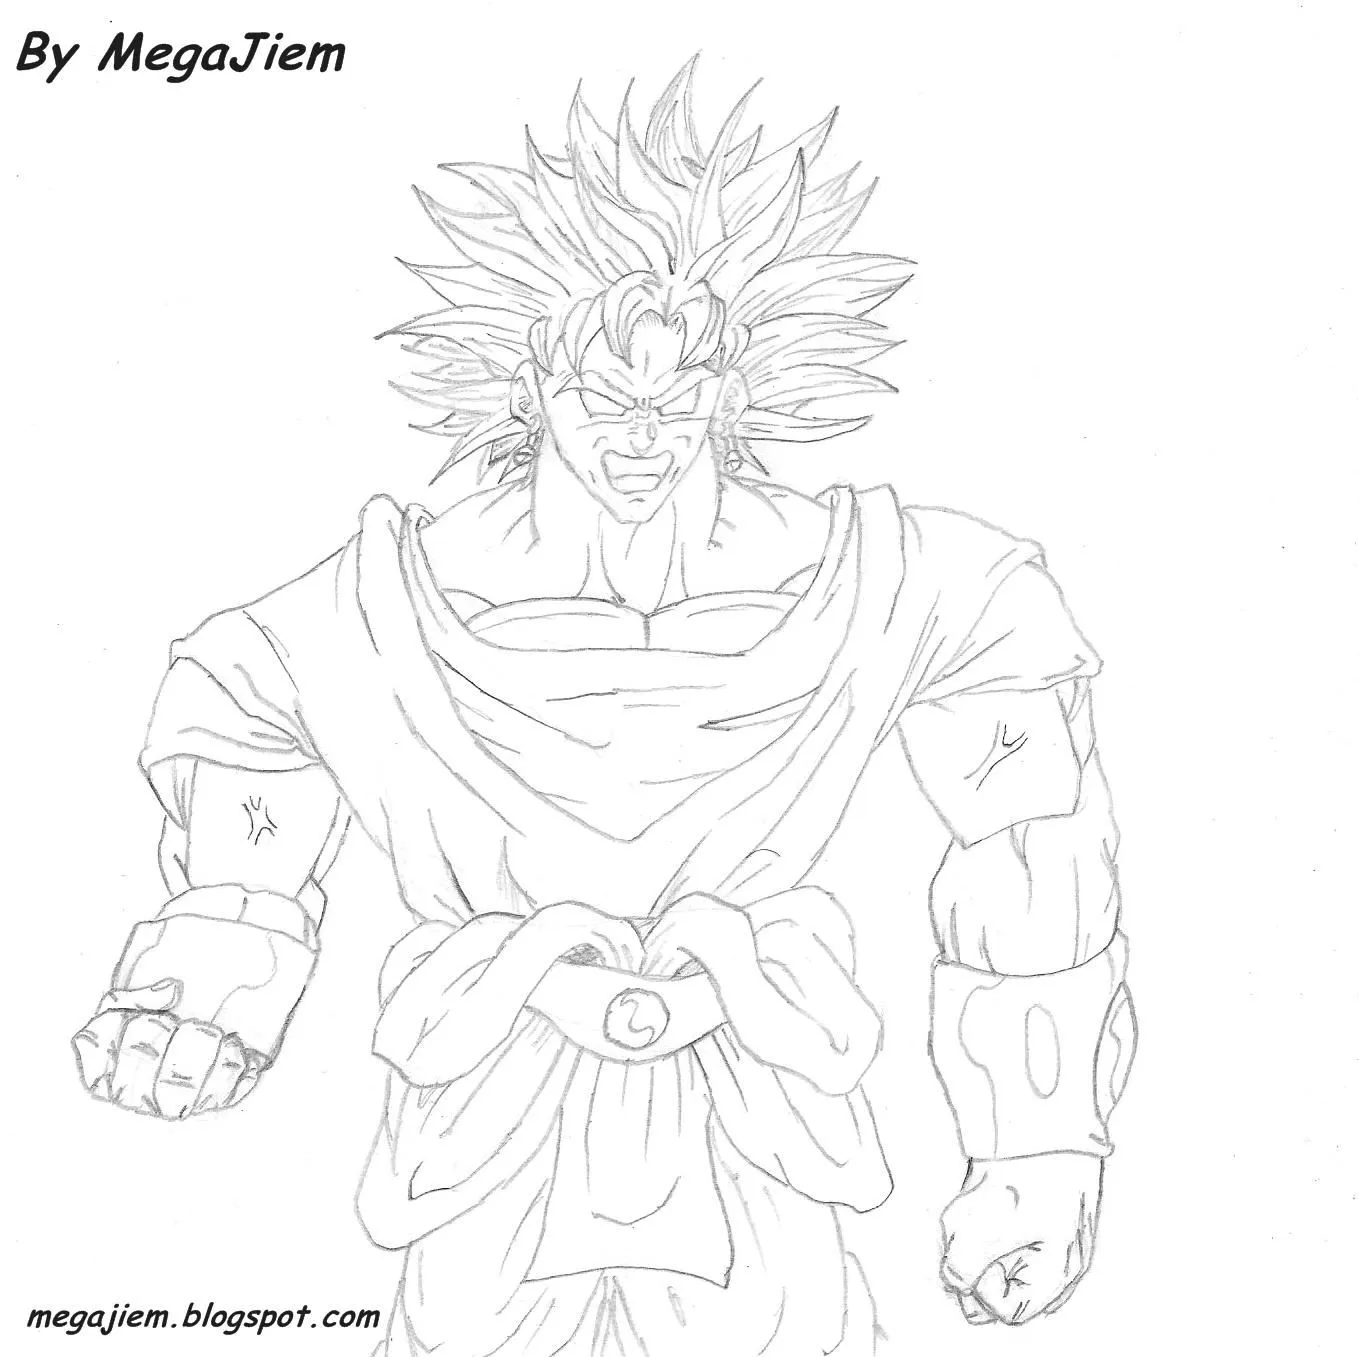 Pin Inkom Gambar Dibujos Para Colorear Goku Vs Broly Mikainkom ...